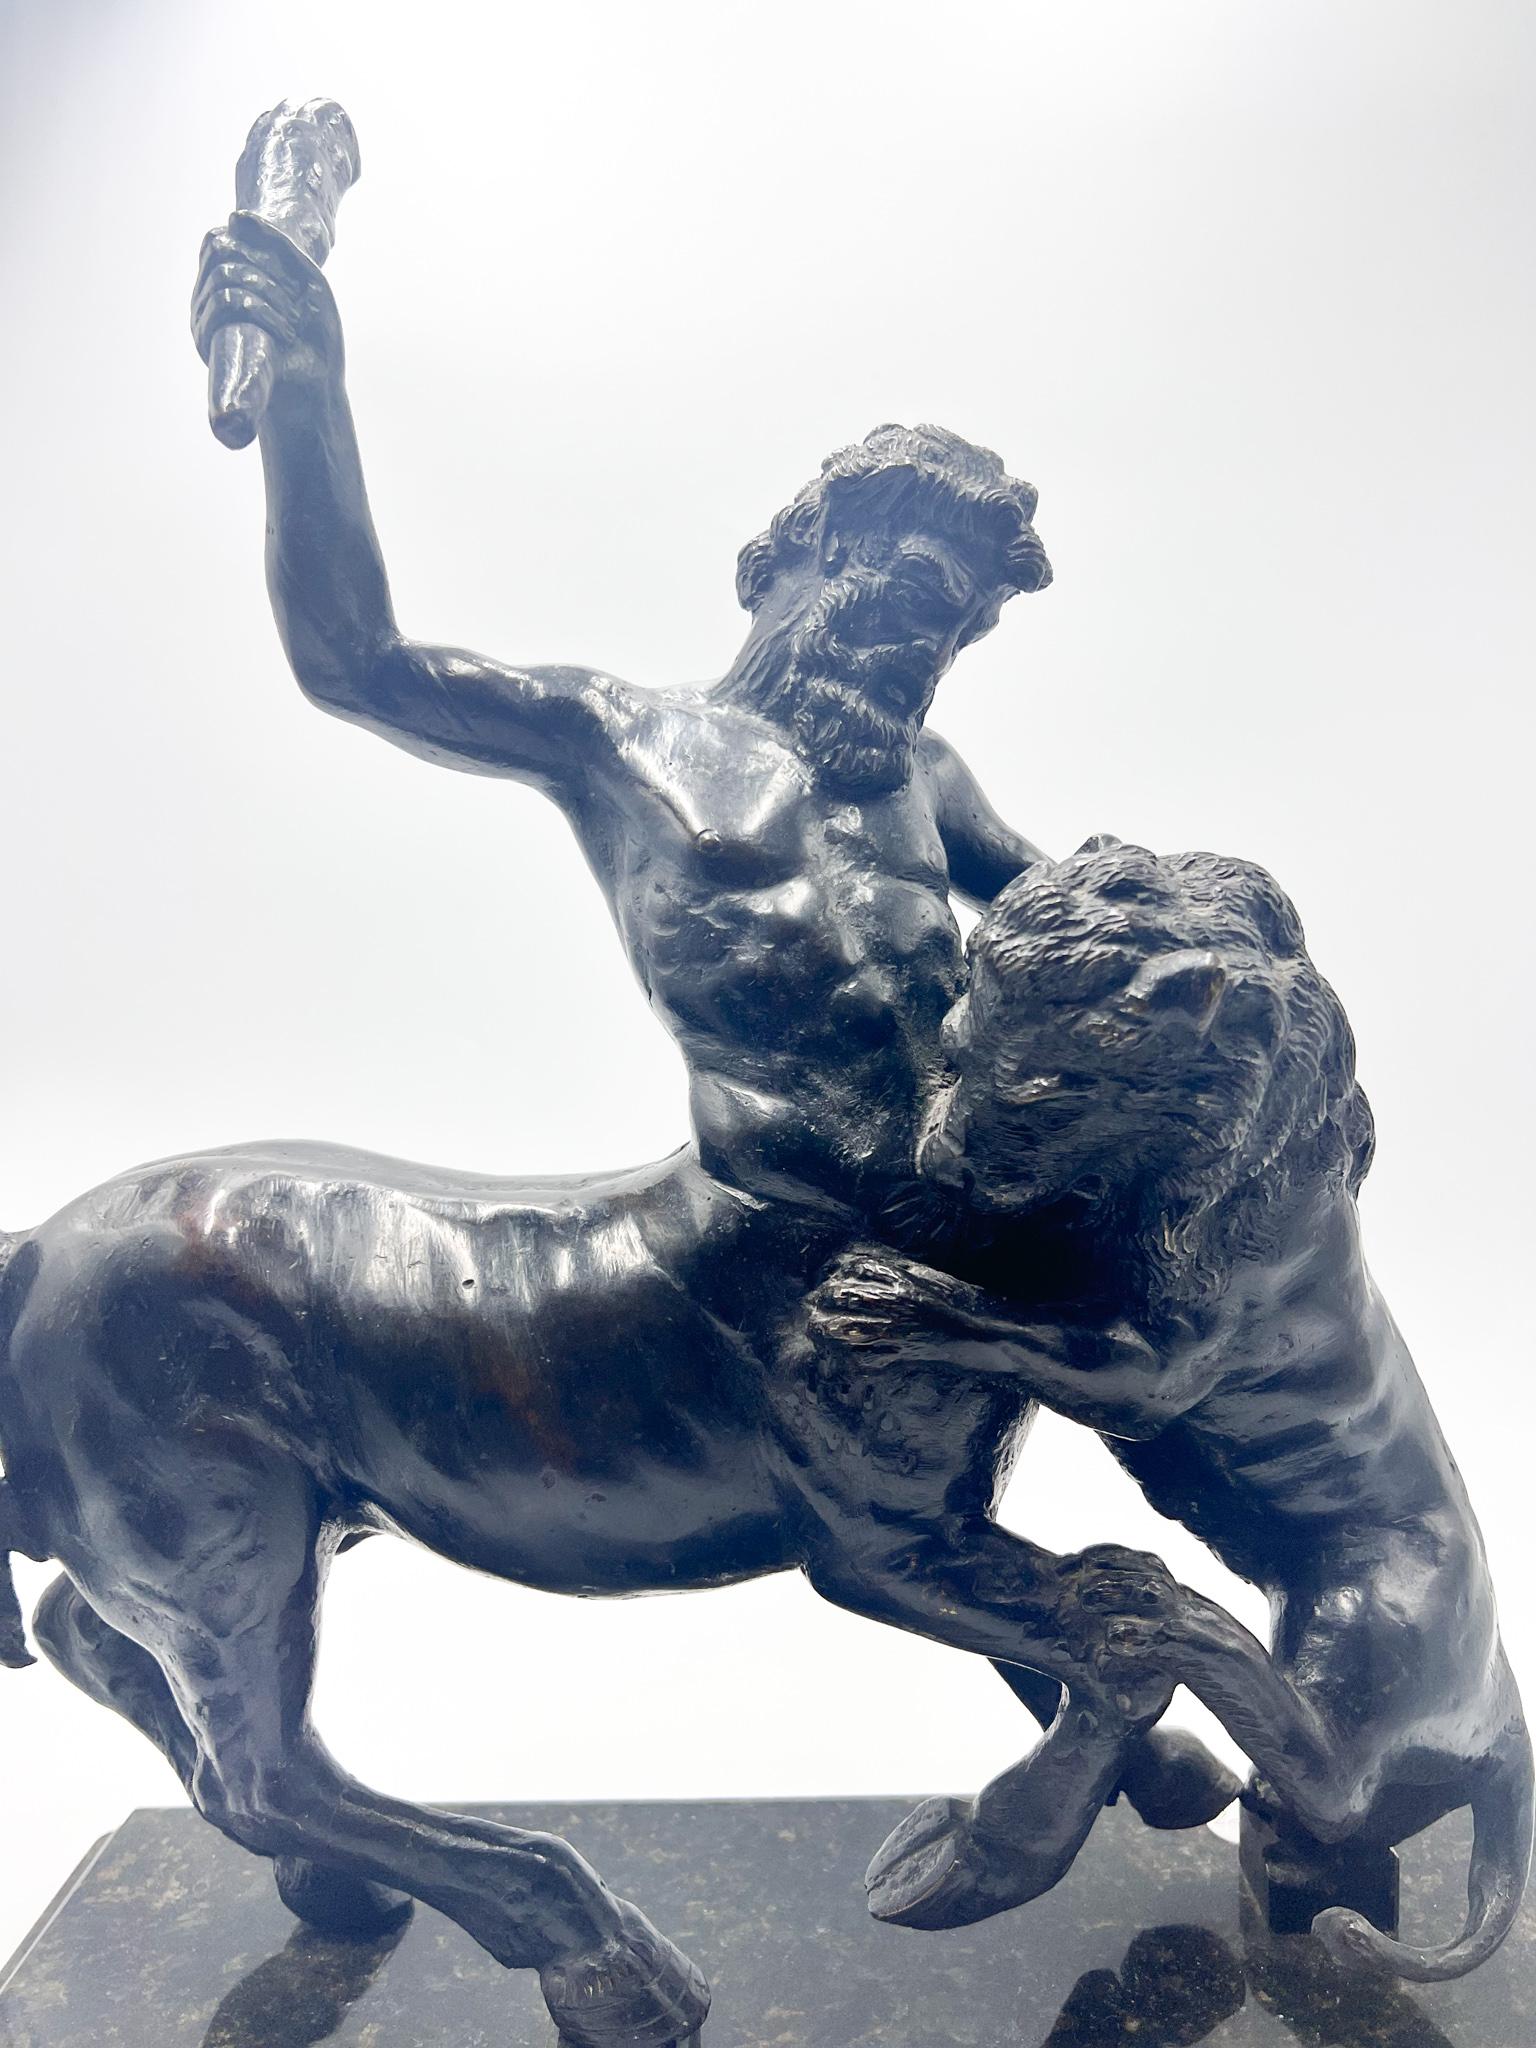 Sculpture en bronze et socle en marbre représentant le combat d'un Centaure avec un lion, réalisée en 1800

Ø cm 48 Ø cm 20 h cm 45

La sculpture n'est pas signée par un artiste, elle représente une scène mythologique de l'un des anciens